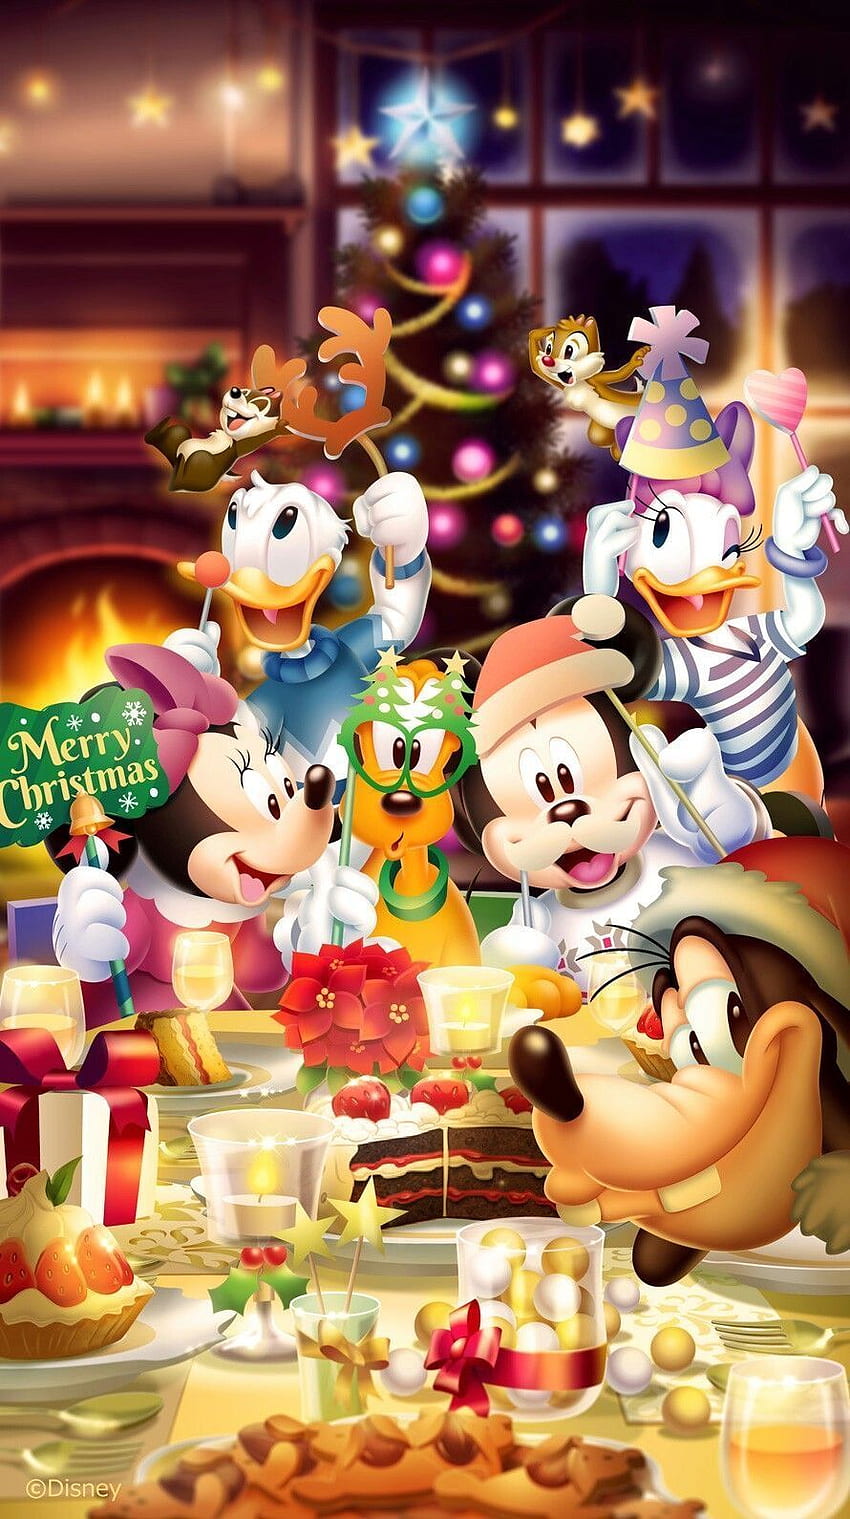 Noël Mickey Mouse: Mickey Mouse và những người bạn đáng yêu sẽ đưa bạn vào một không gian giản dị và ấm áp nhưng đầy vui tươi và tràn đầy năng lượng. Hãy tận hưởng những bức ảnh Noël vui nhộn này với những người thân yêu của bạn.